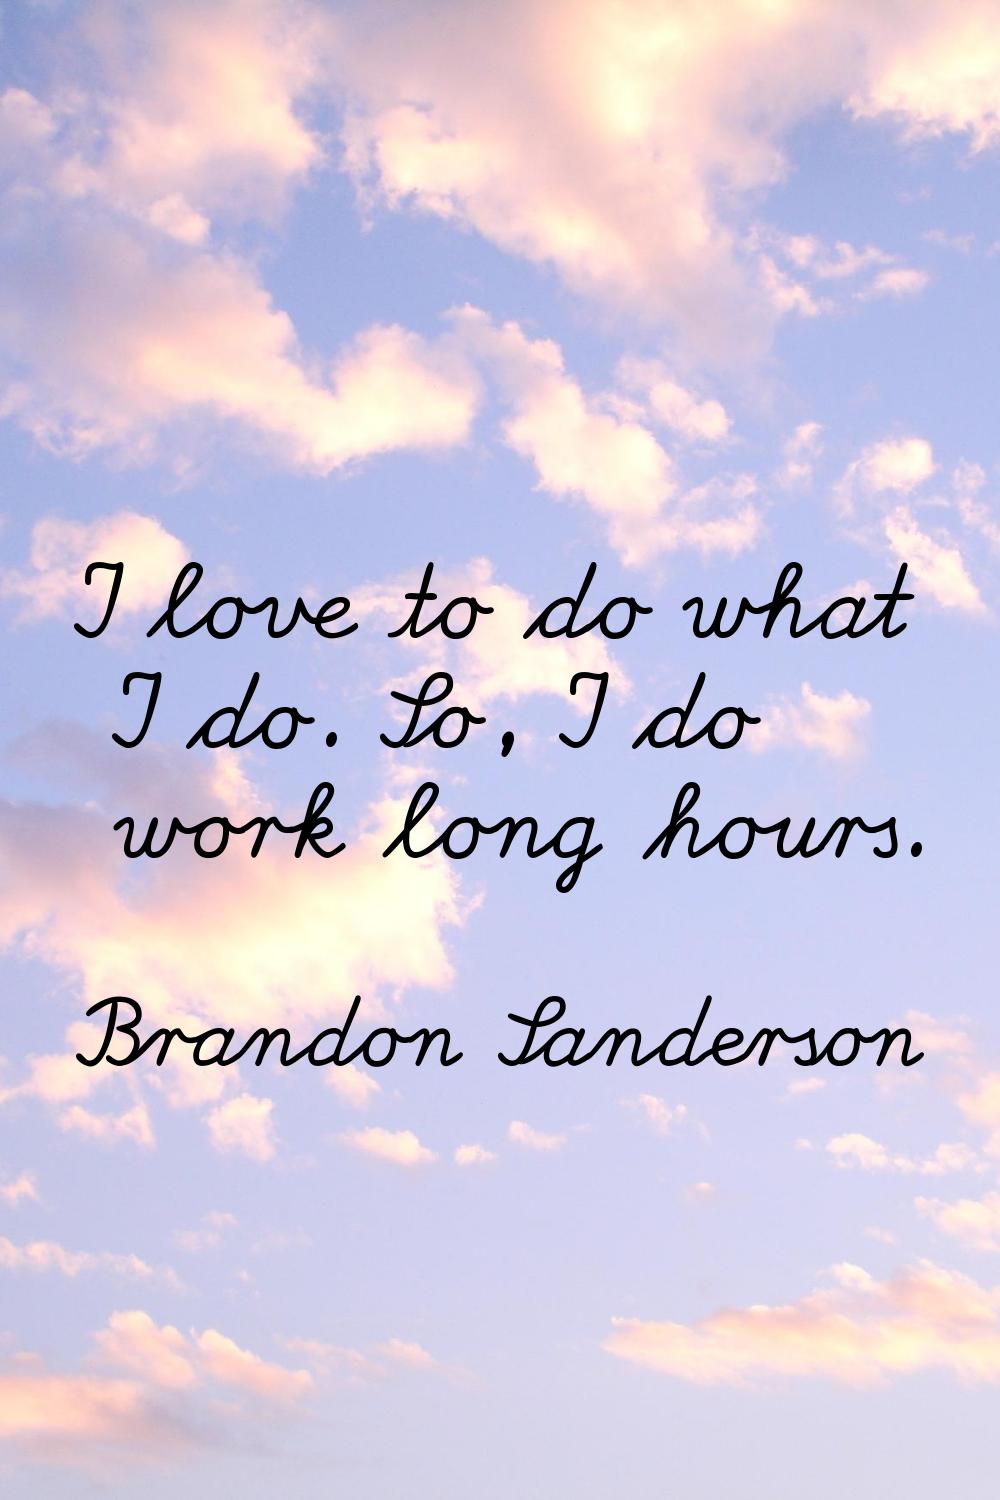 I love to do what I do. So, I do work long hours.